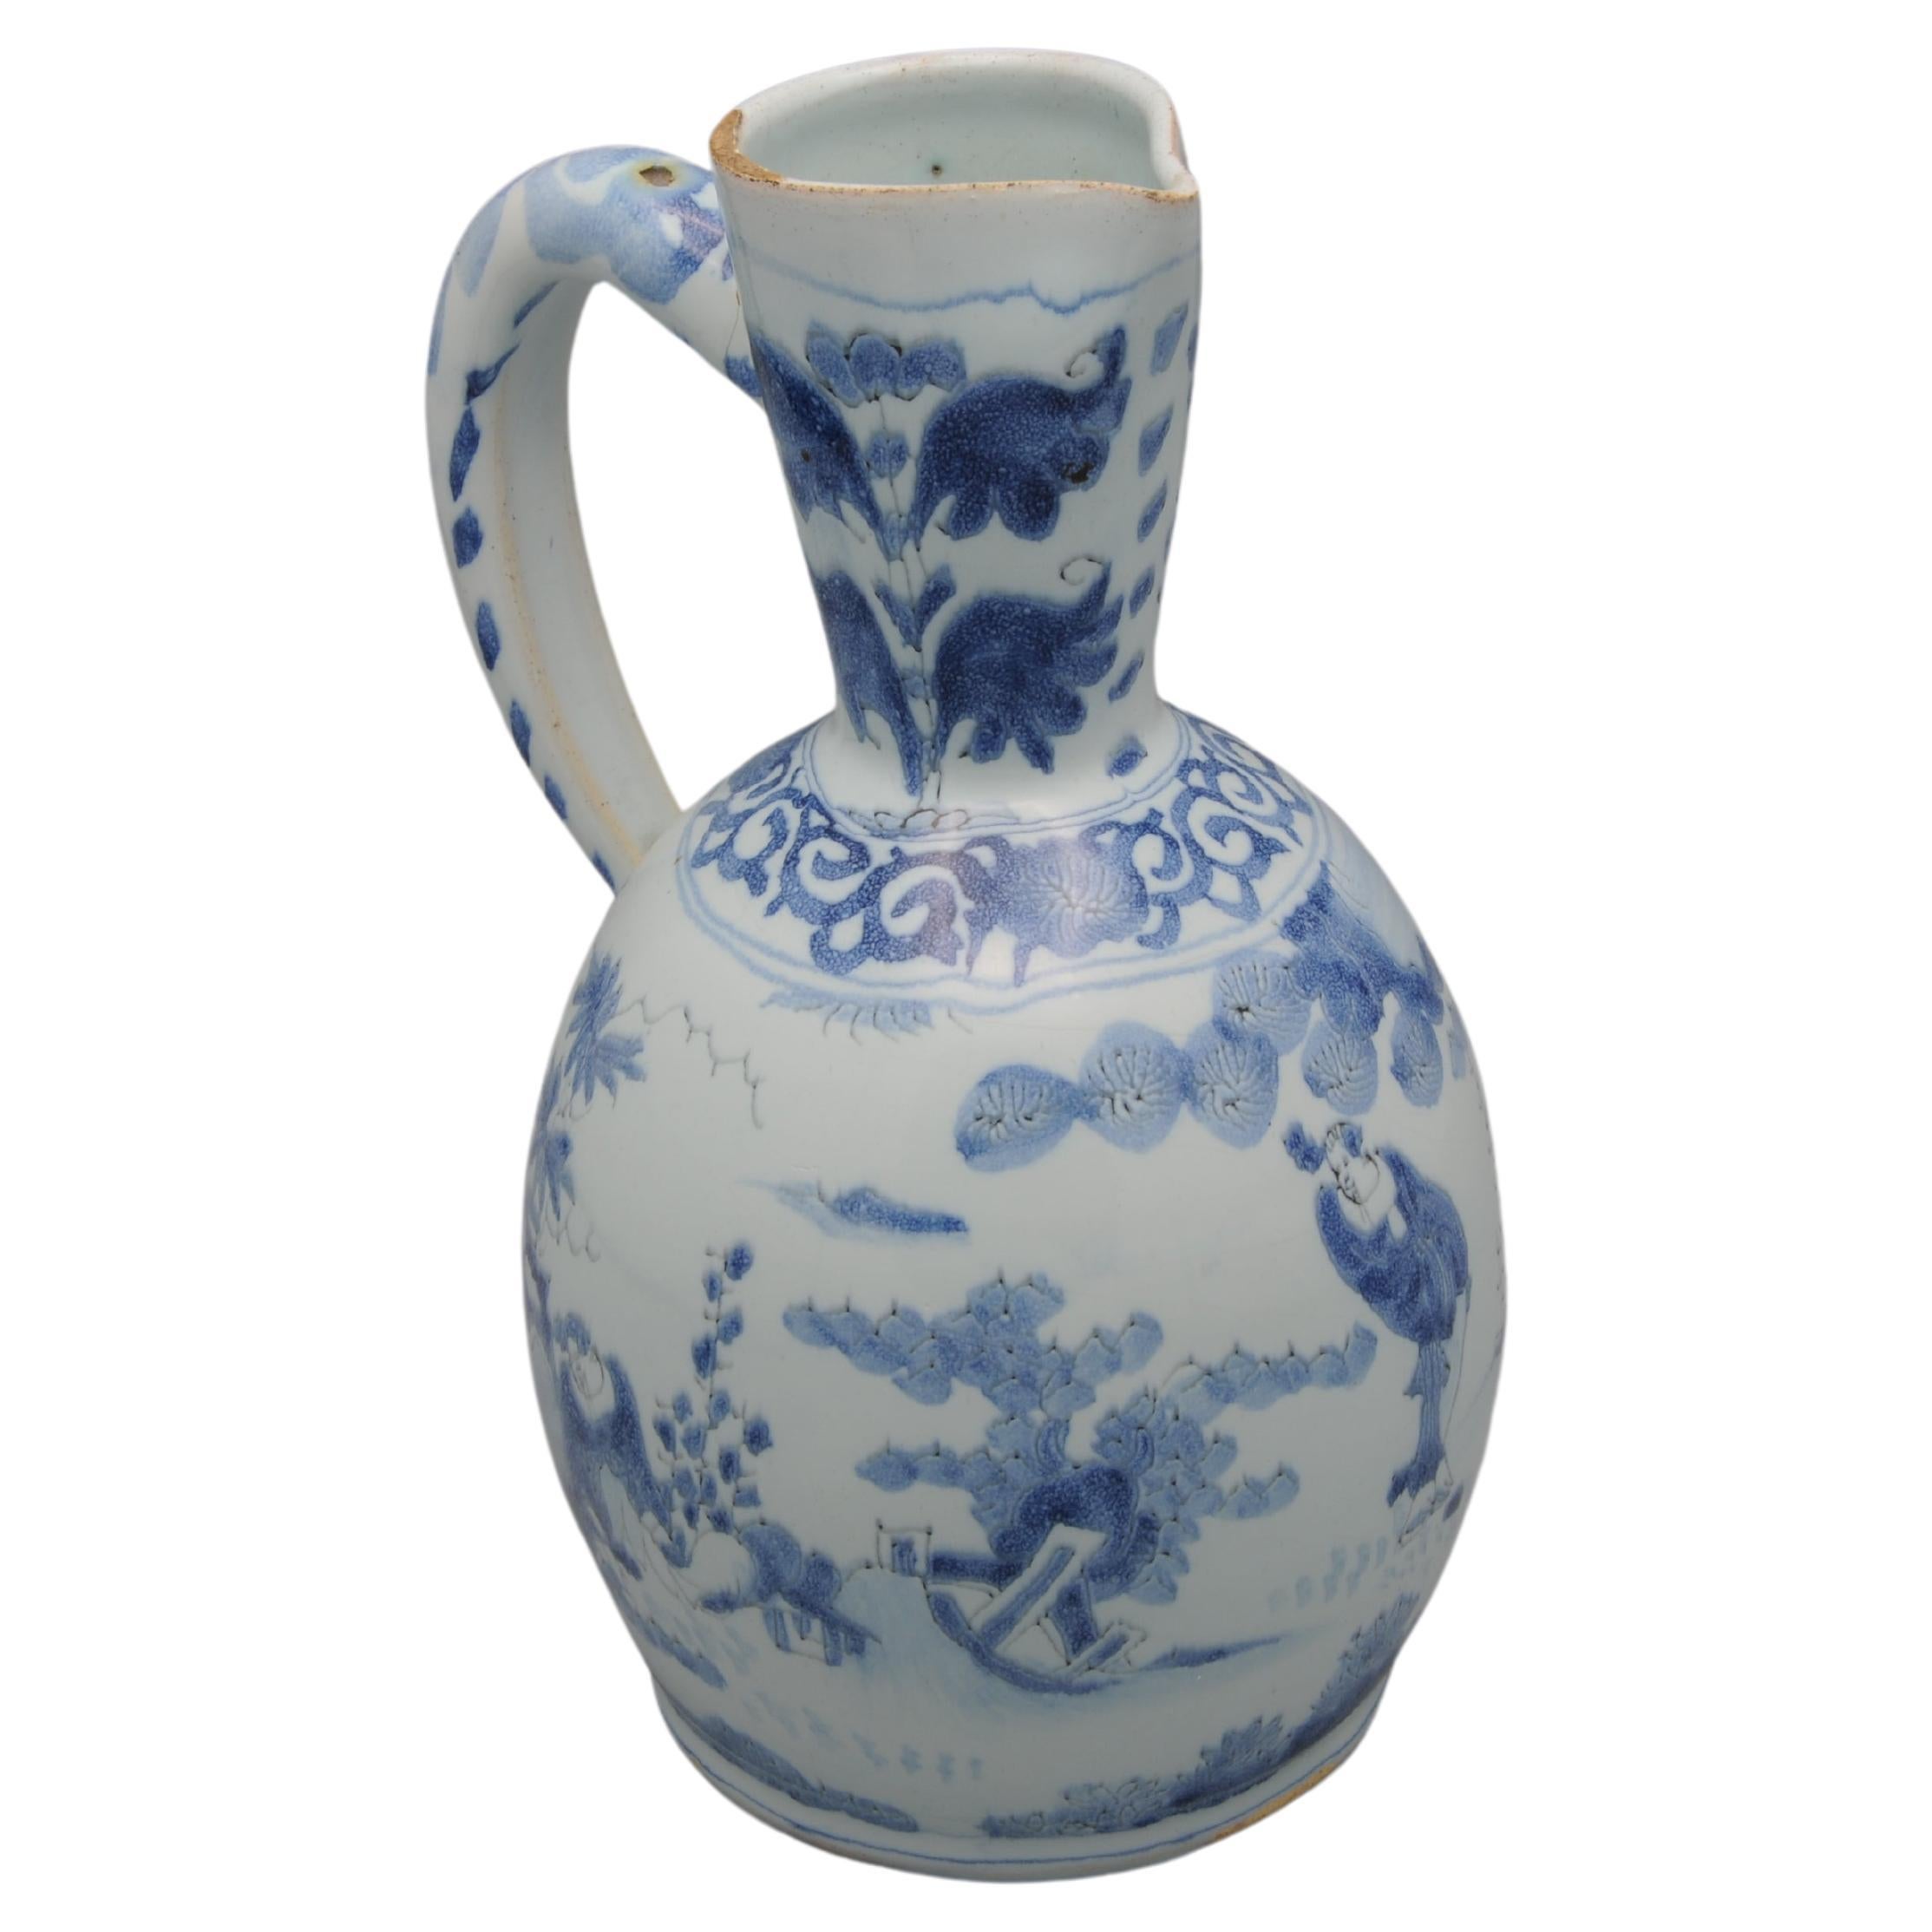 Verseuse en faïence hollandaise à décor bleu tendre d'un paysage chinois avec des personnages. Le col est orné de deux fleurs stylisées au-dessus d'une bordure de lambrequins au niveau du col, l'anse est ornée d'un motif de rinceaux
Couvercle et